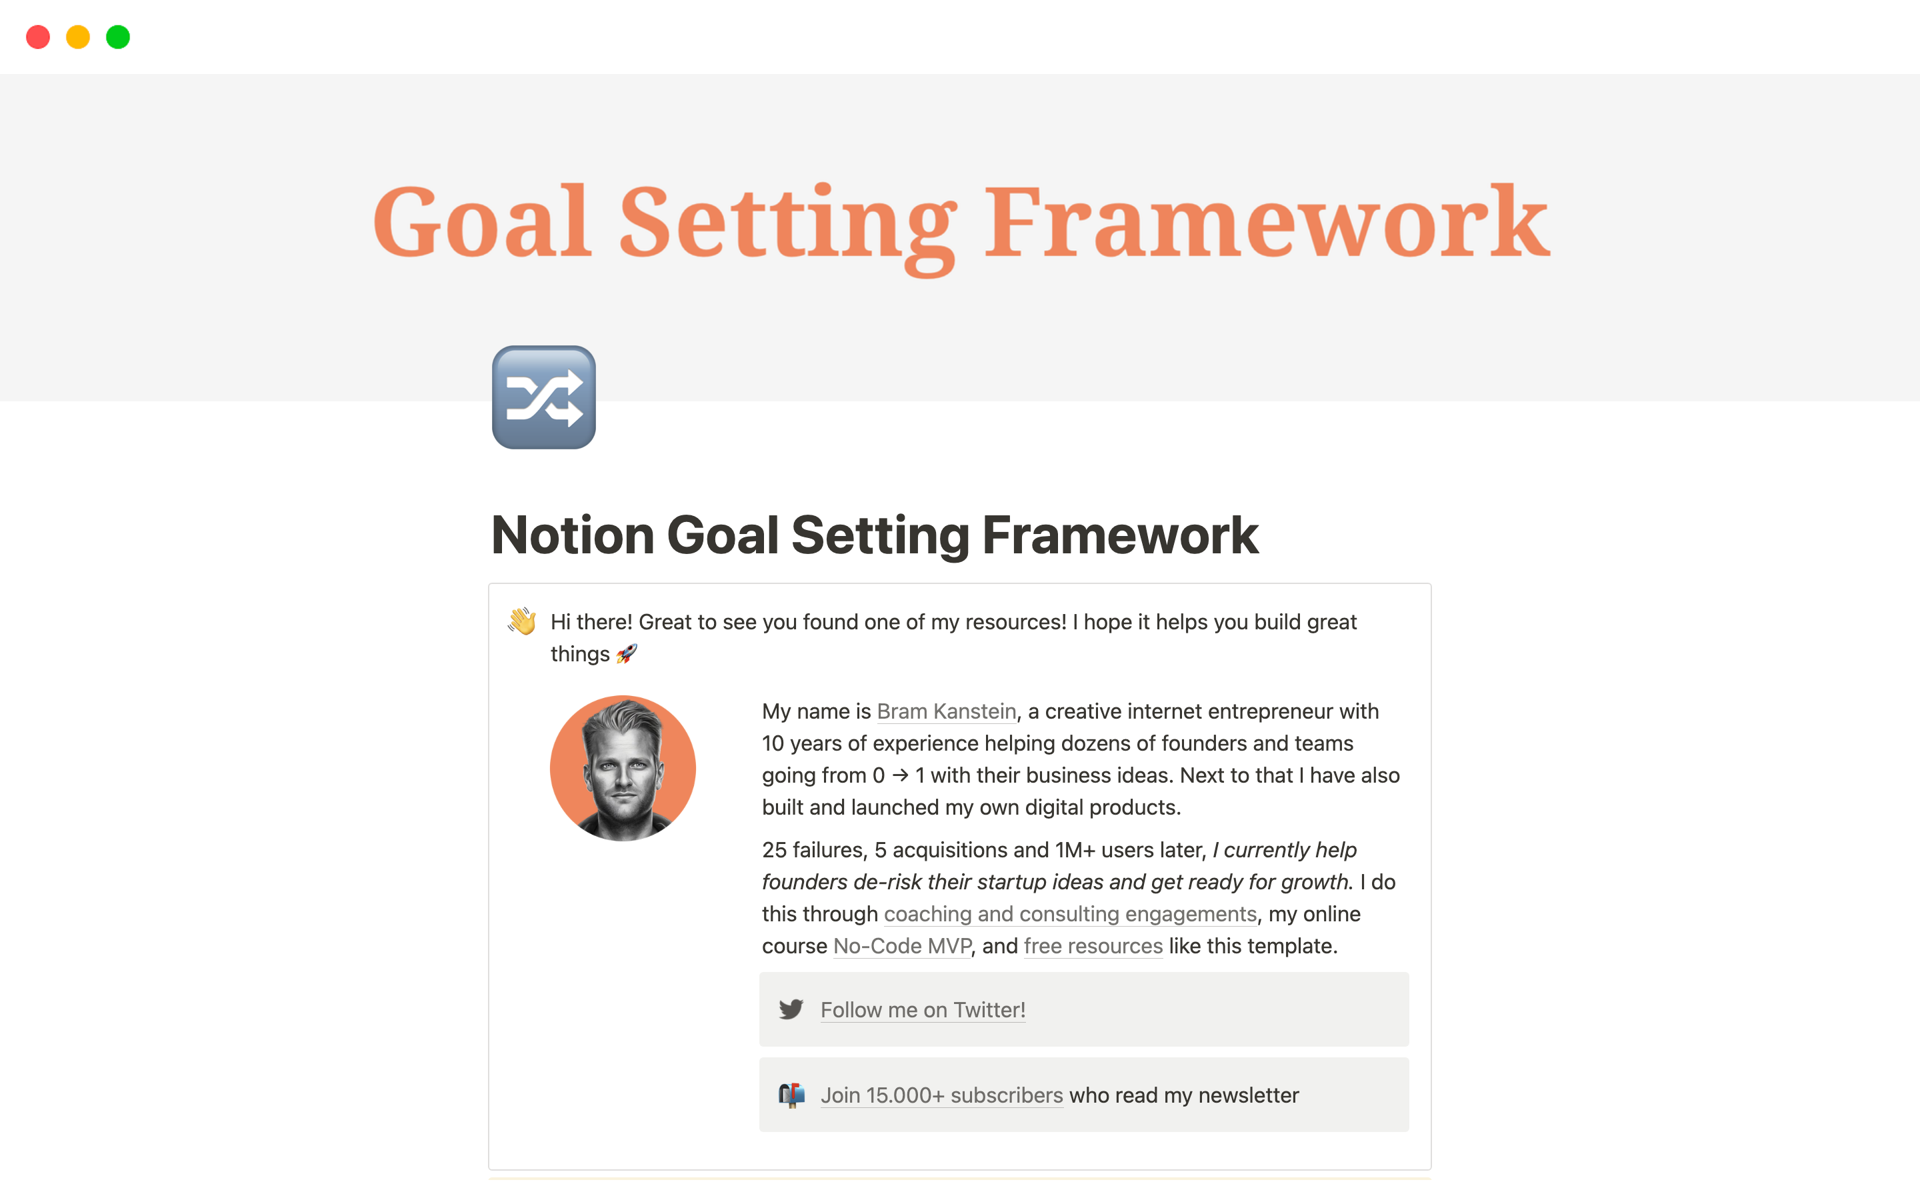 Uma prévia do modelo para Goal Setting Framework